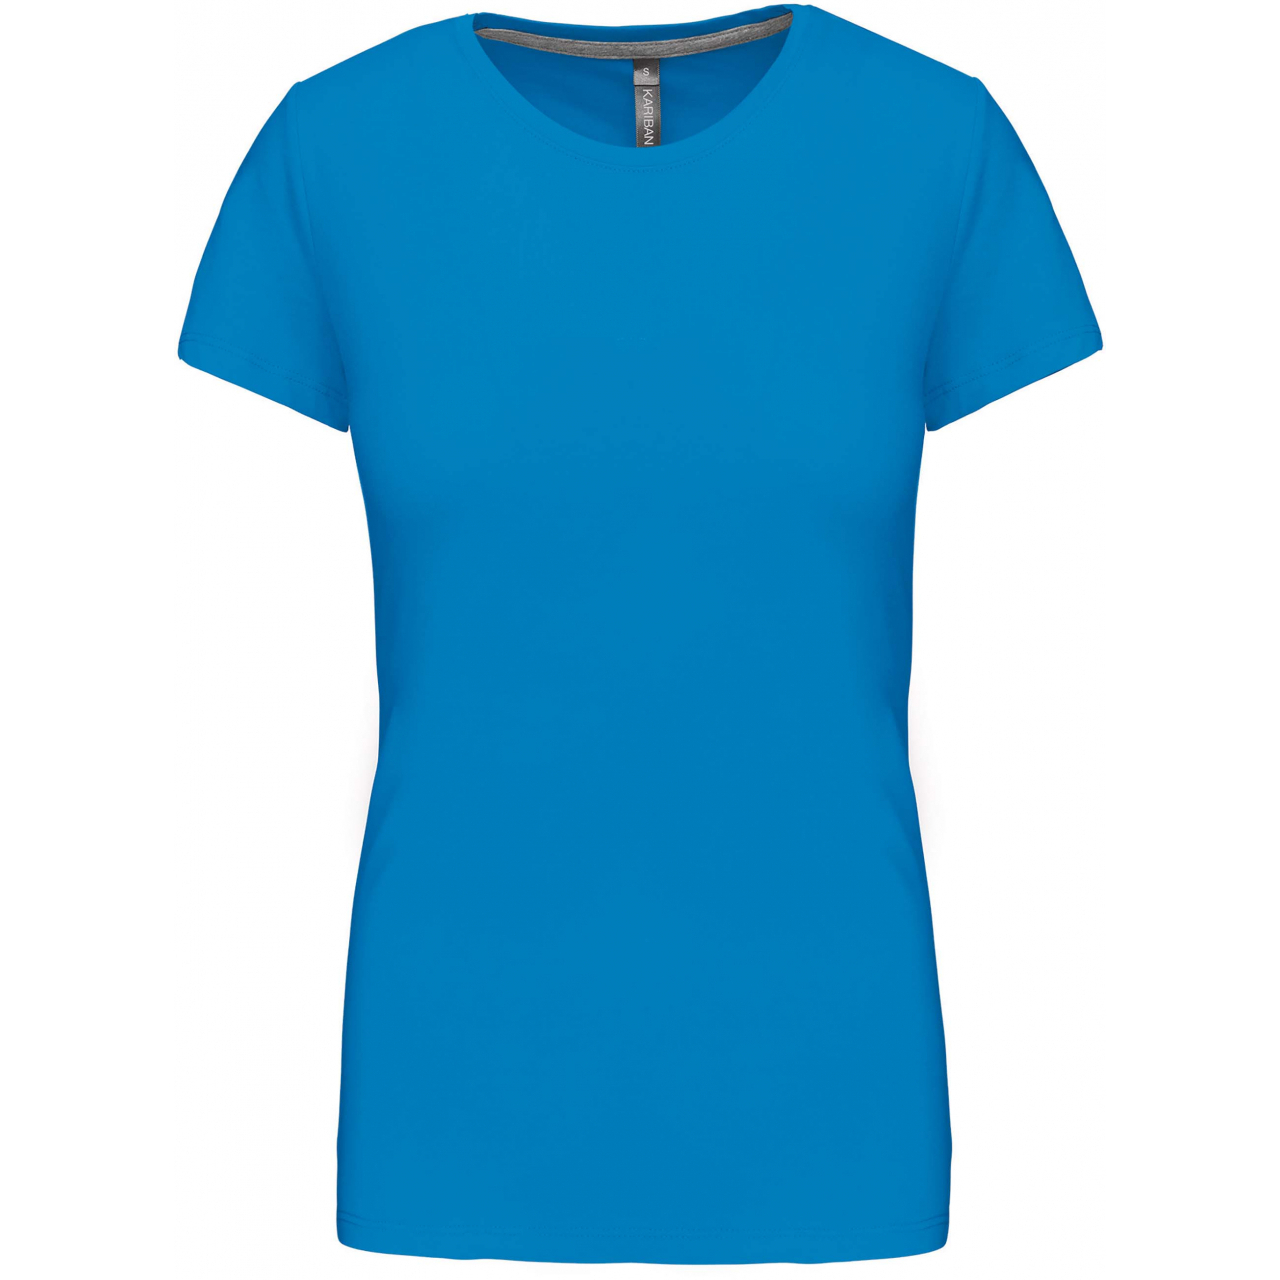 Dámské tričko Kariban s krátkým rukávem - středně modré, M